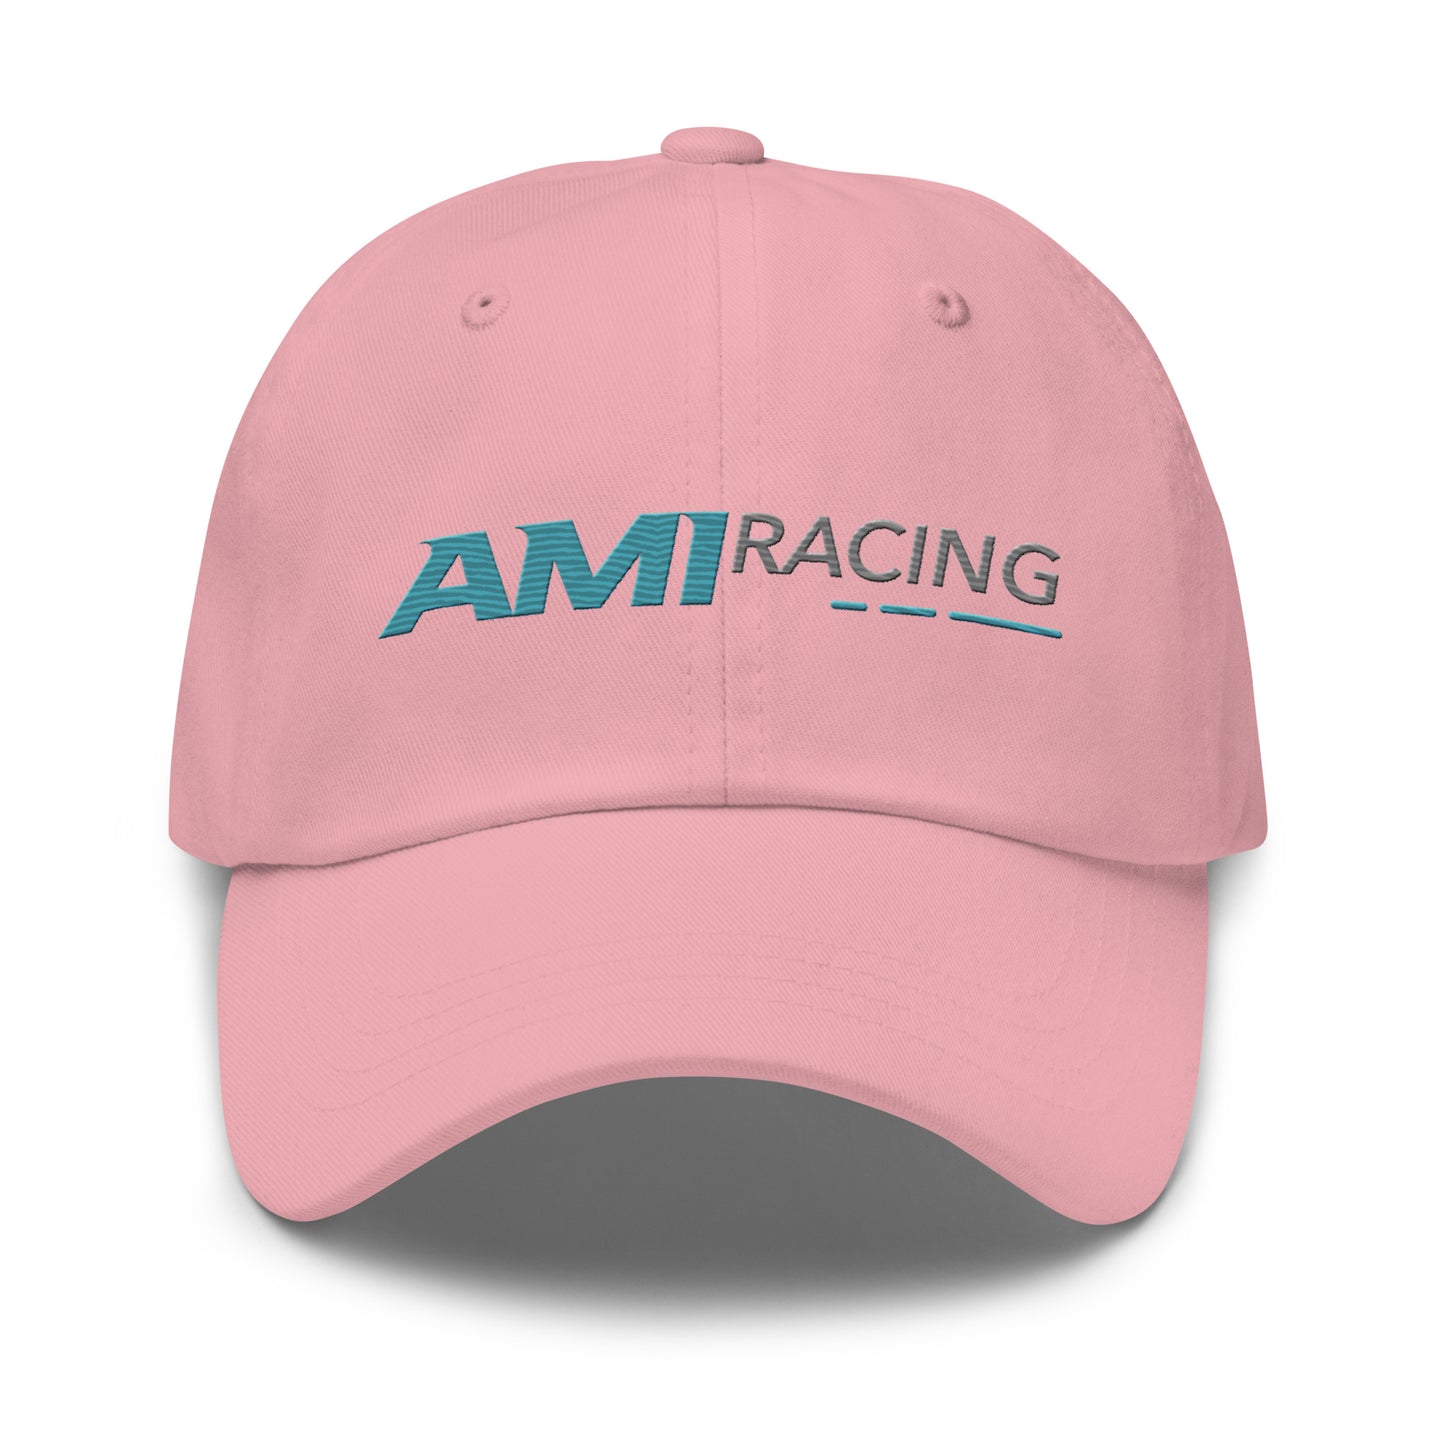 AMI Racing "Dad Hat"